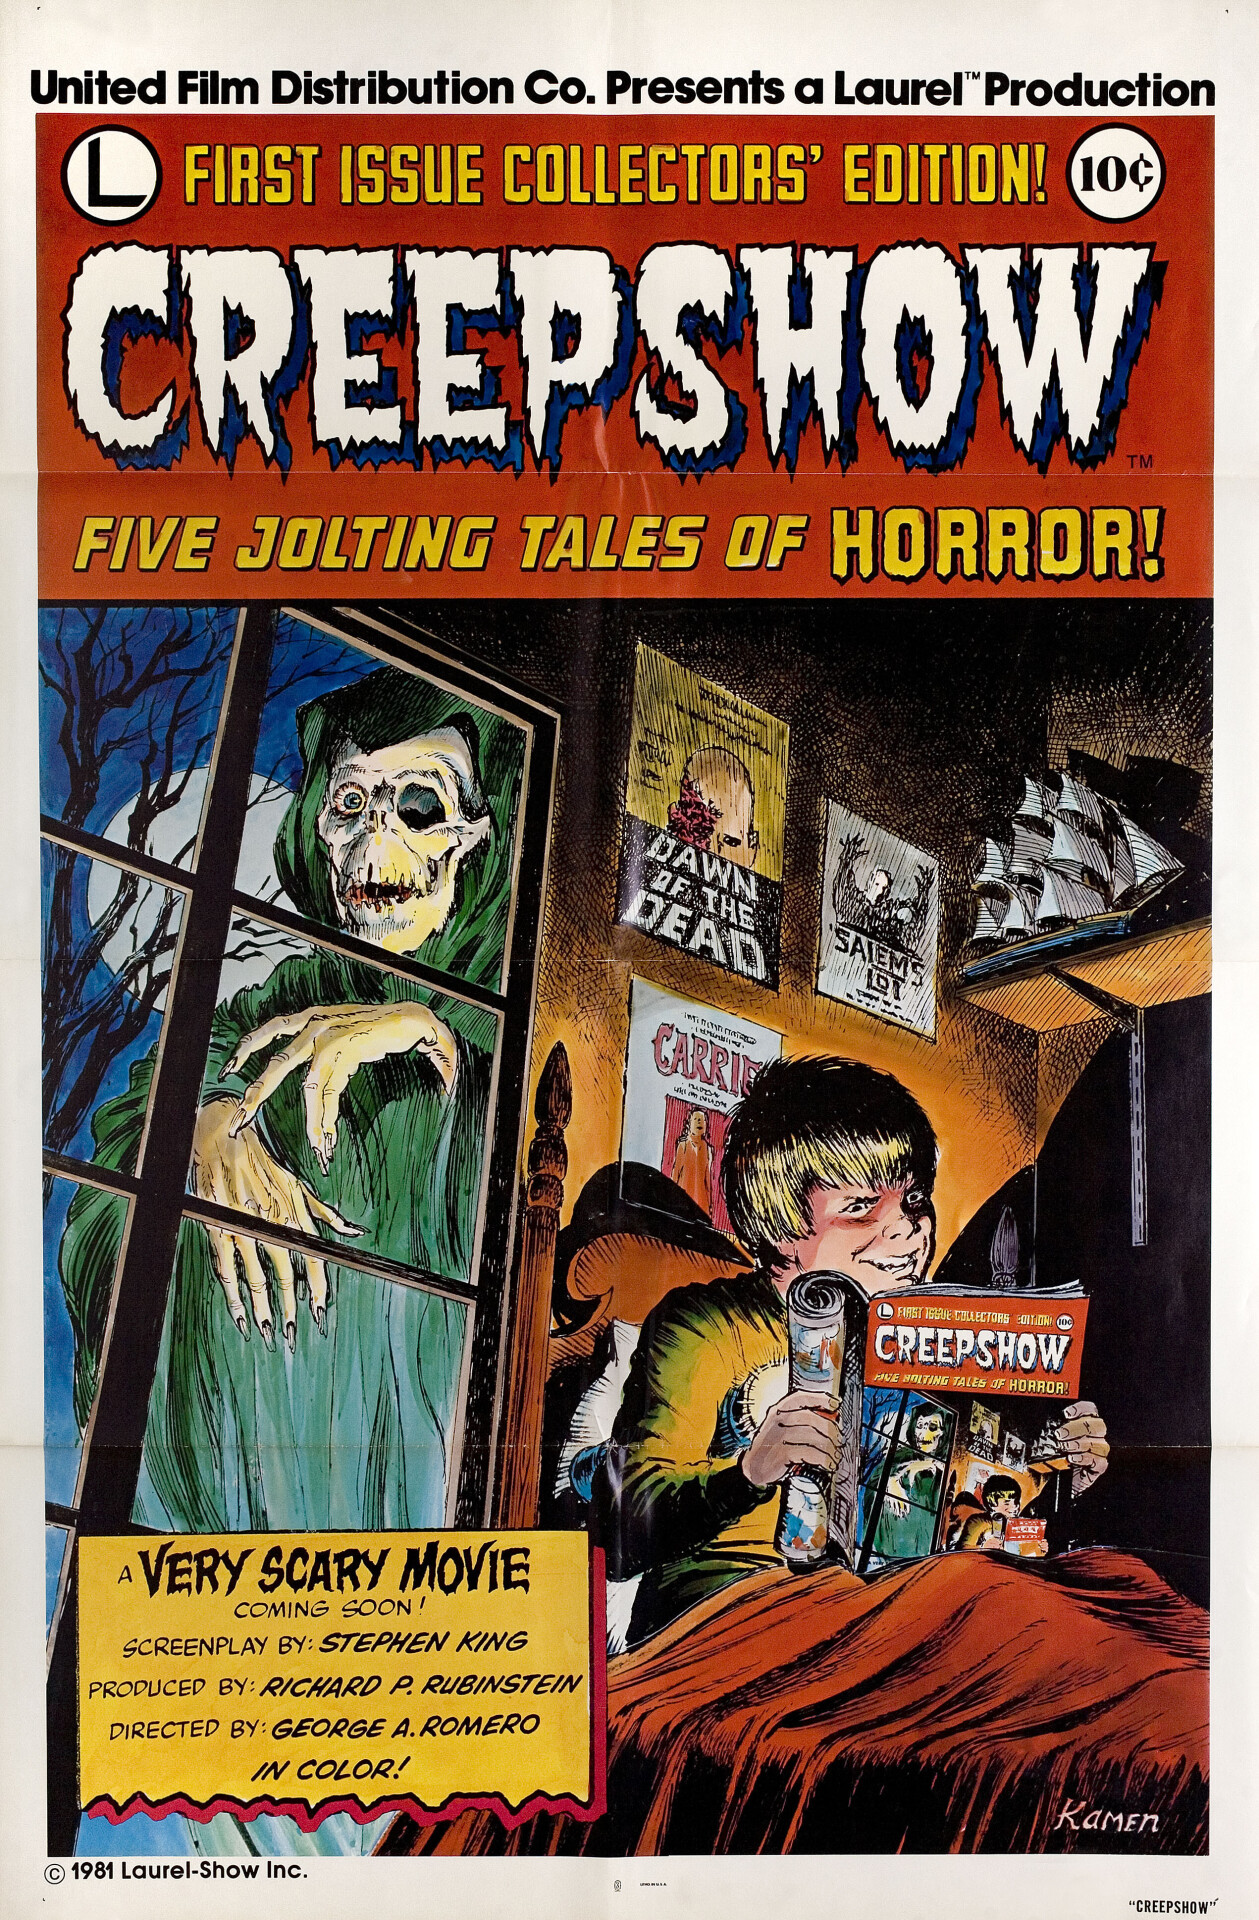 Калейдоскоп ужасов (Creepshow, 1982), режиссёр Джордж А. Ромеро, американский постер к фильму, автор Джек Кэмен (ужасы, 1981 год)